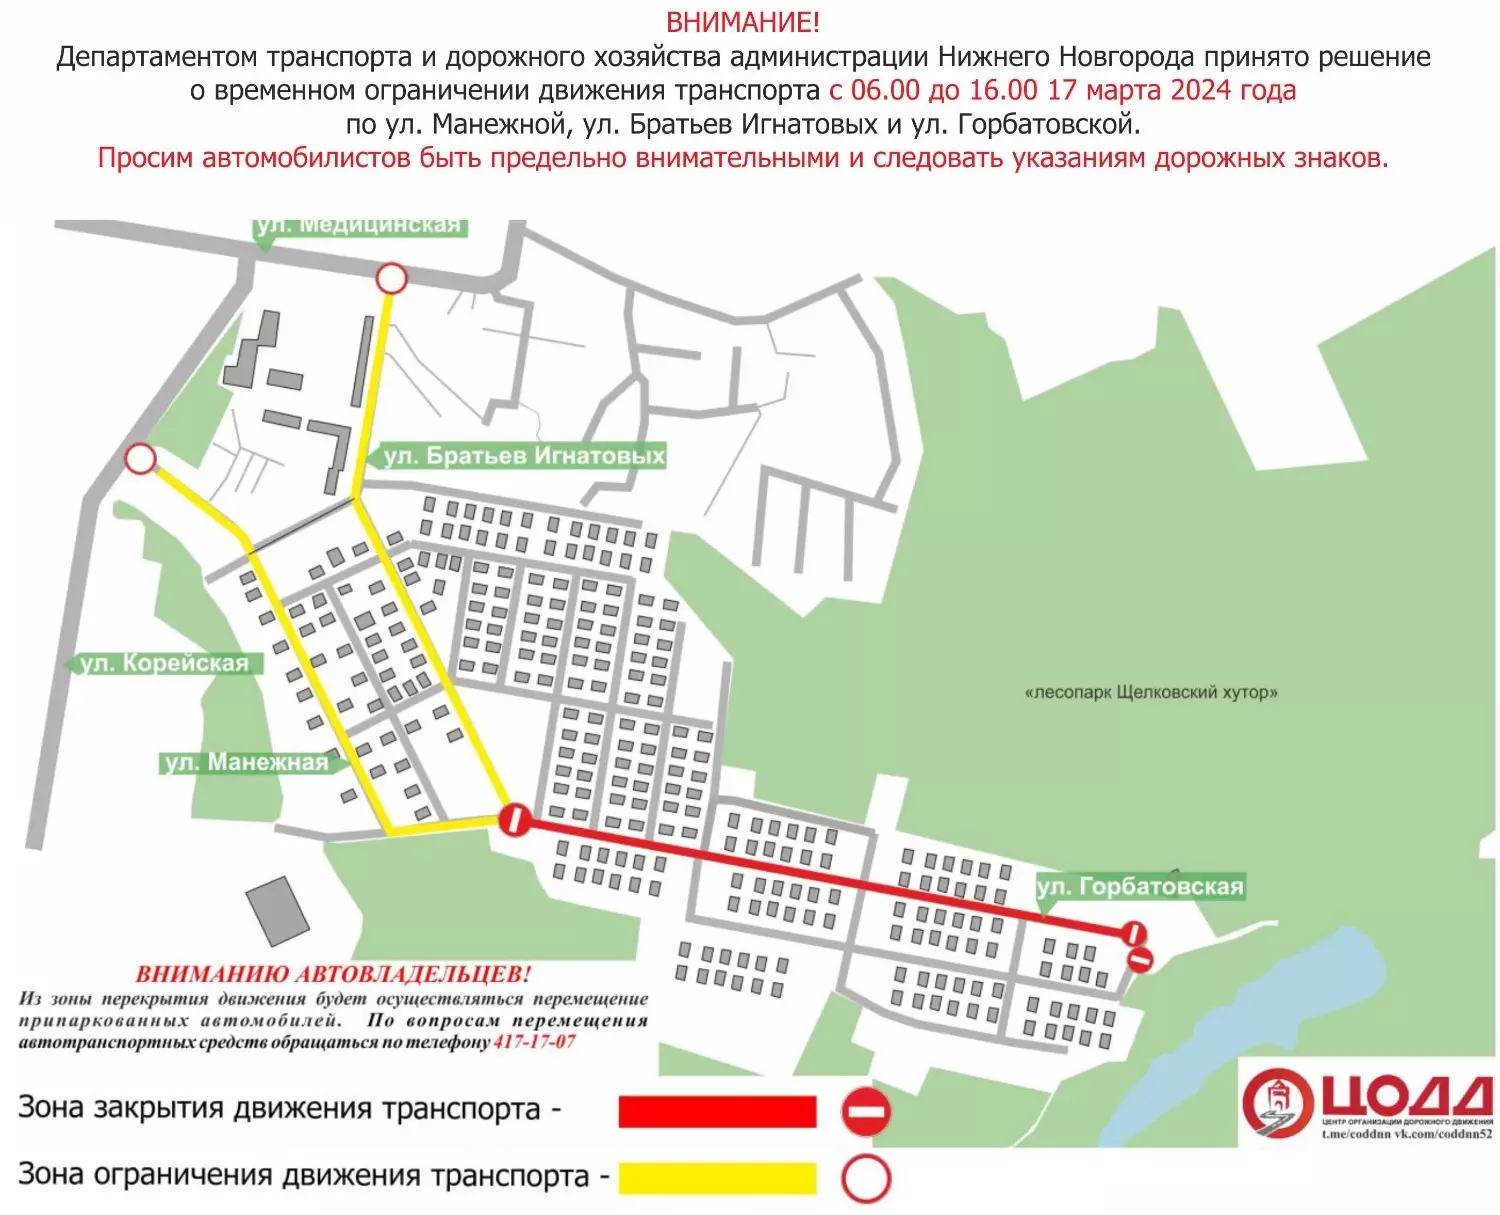 в районе Щелоковского хутора будет прекращено движение на трех улицах